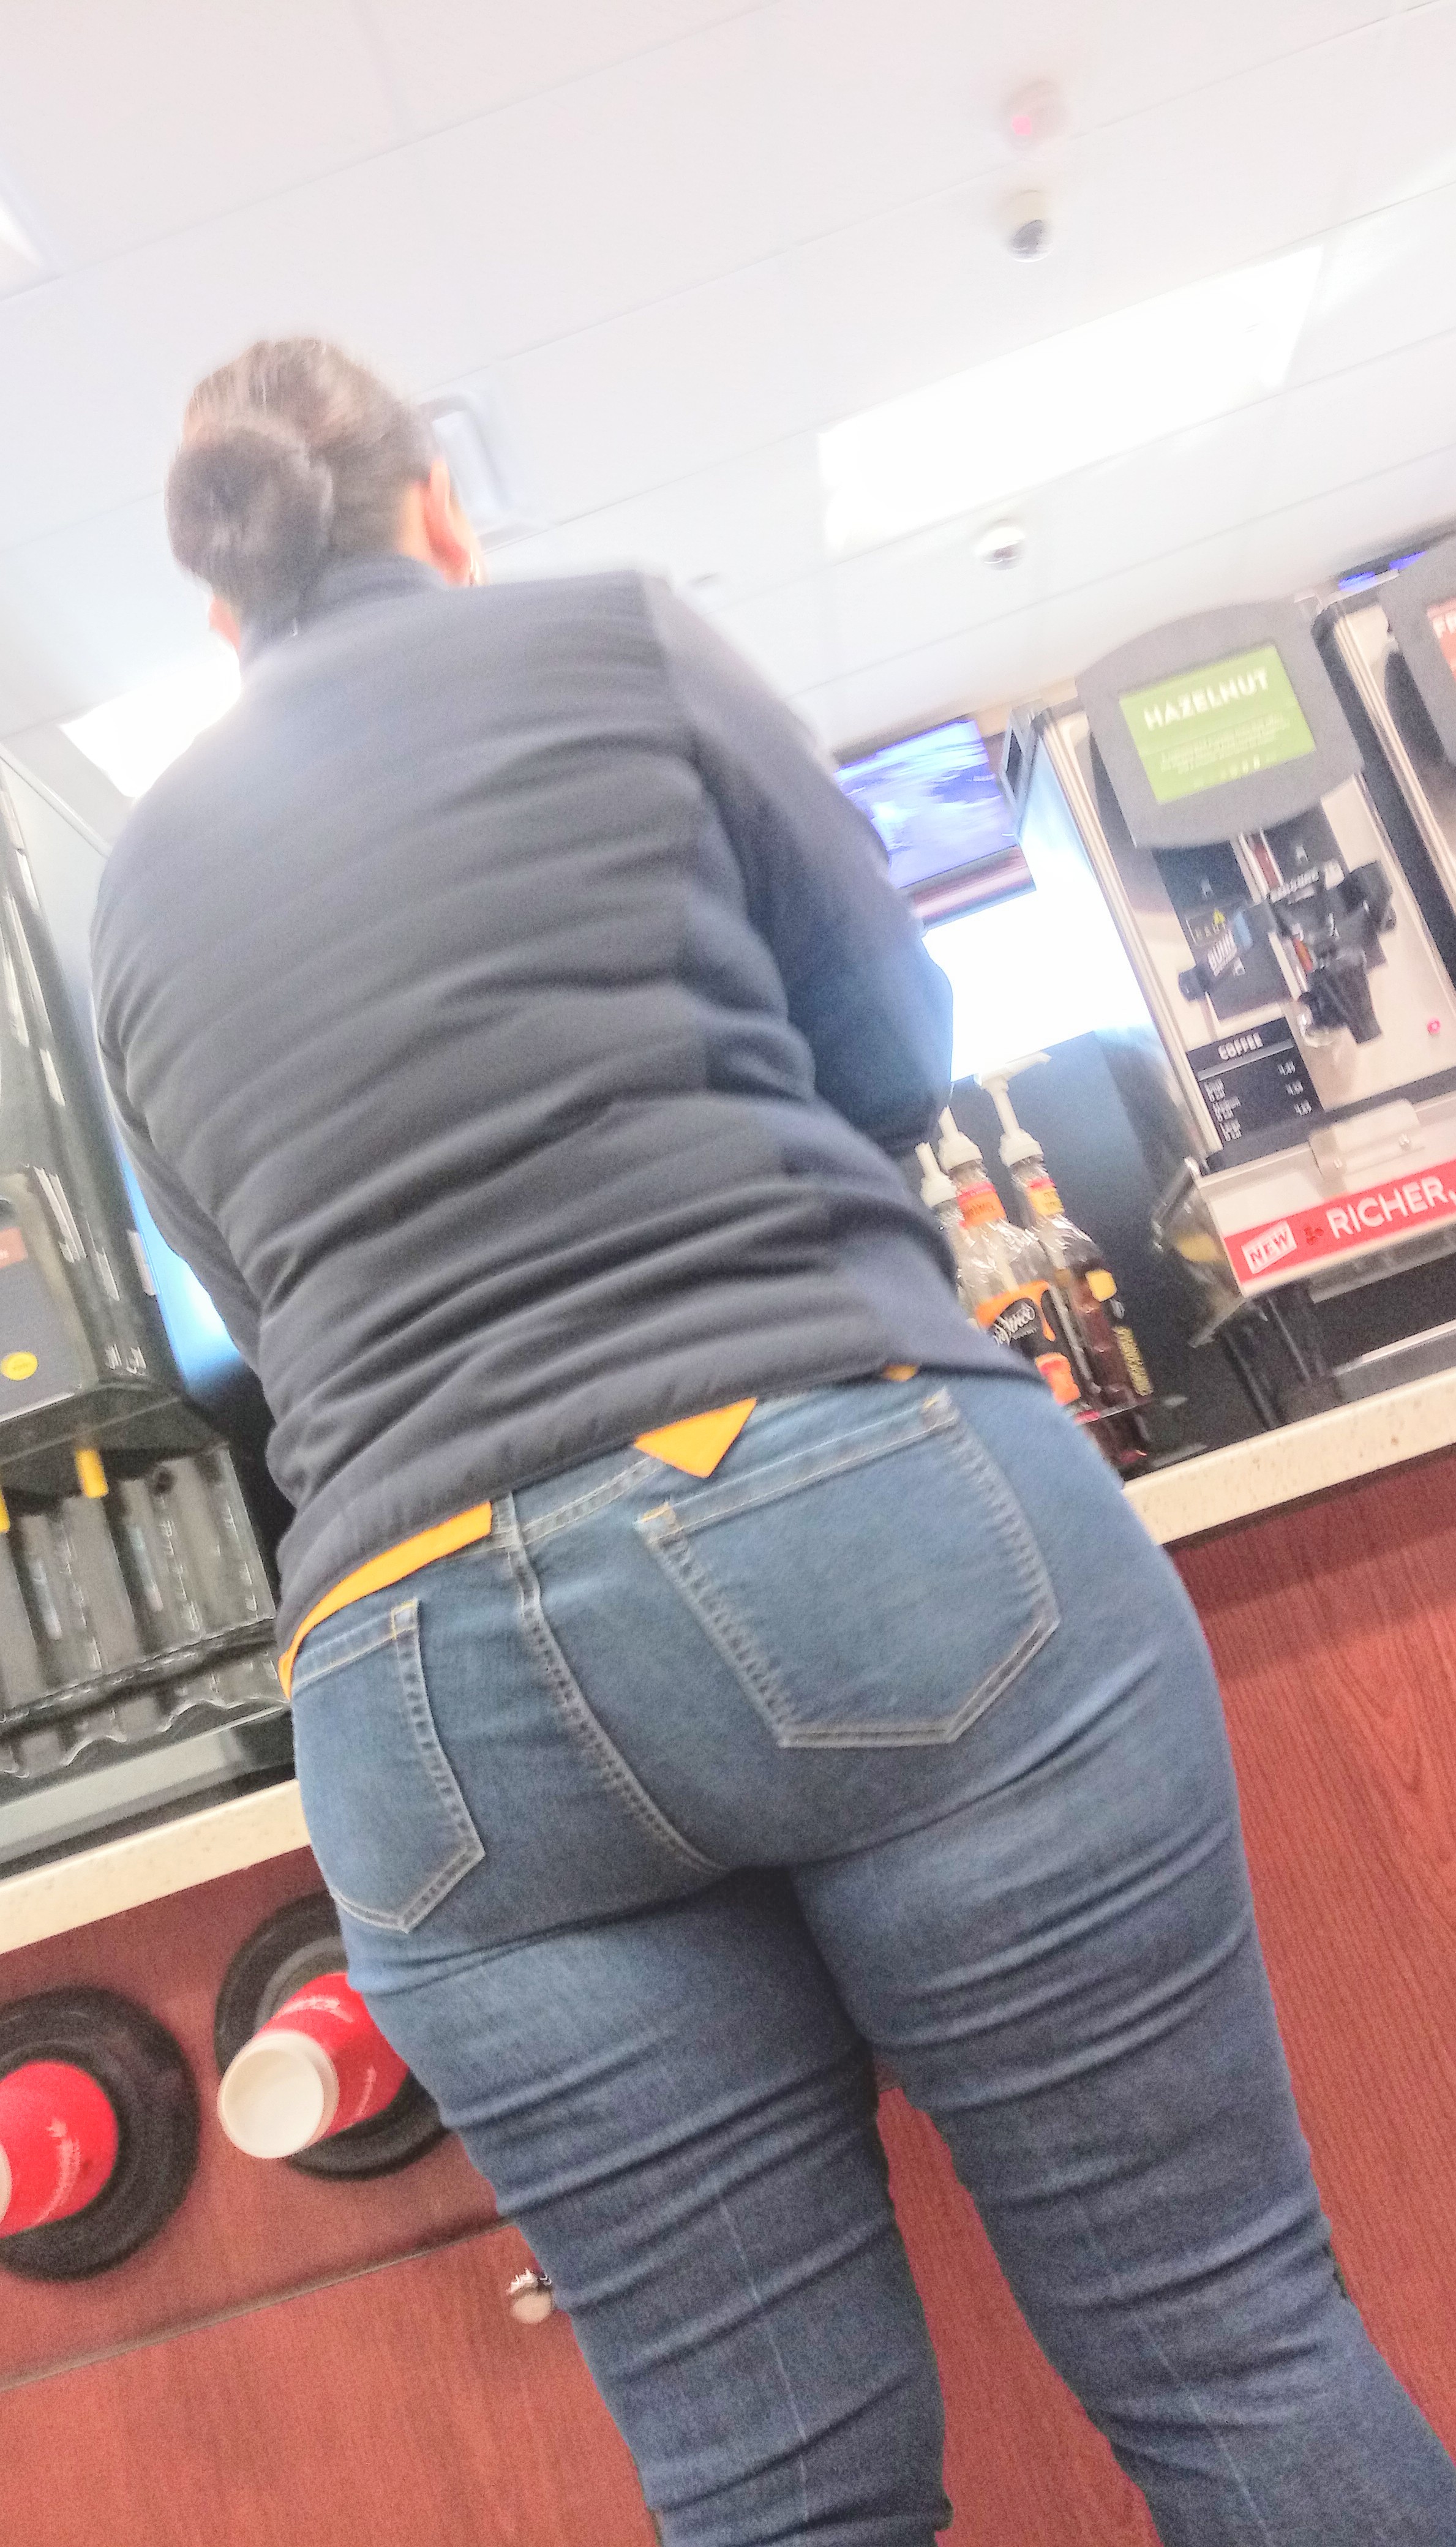 Bug ass latina teen Big Butt Latina Her Half White Daught Tight Jeans Forum